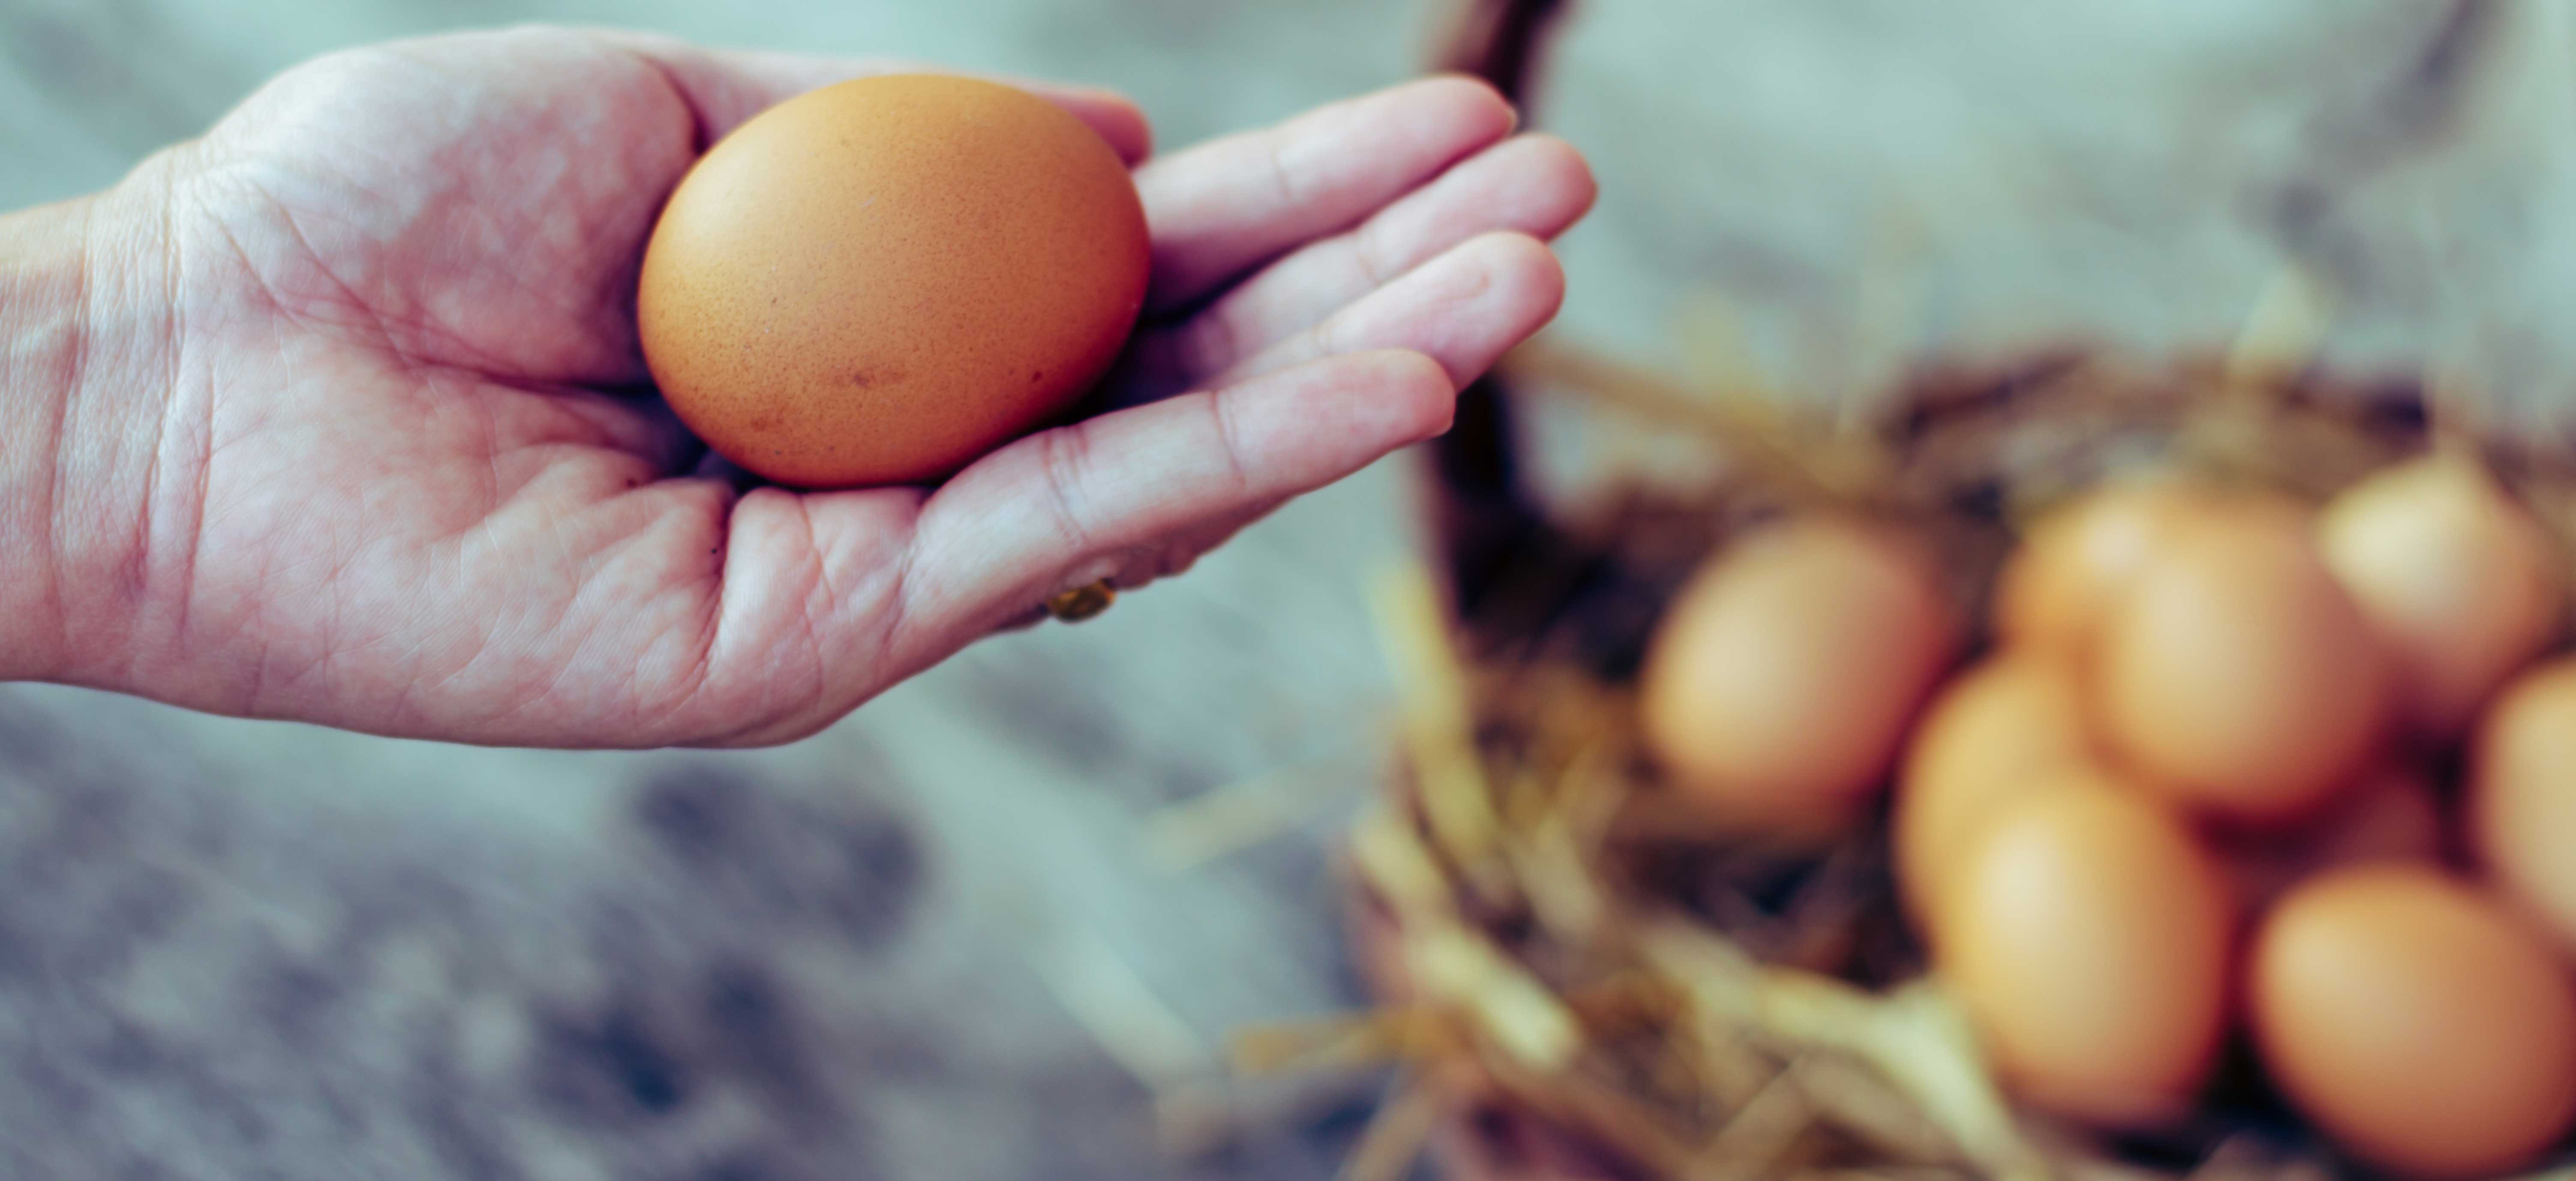 Consument wil ‘seksen in het ei’ als alternatief voor doden eendagshaantjes